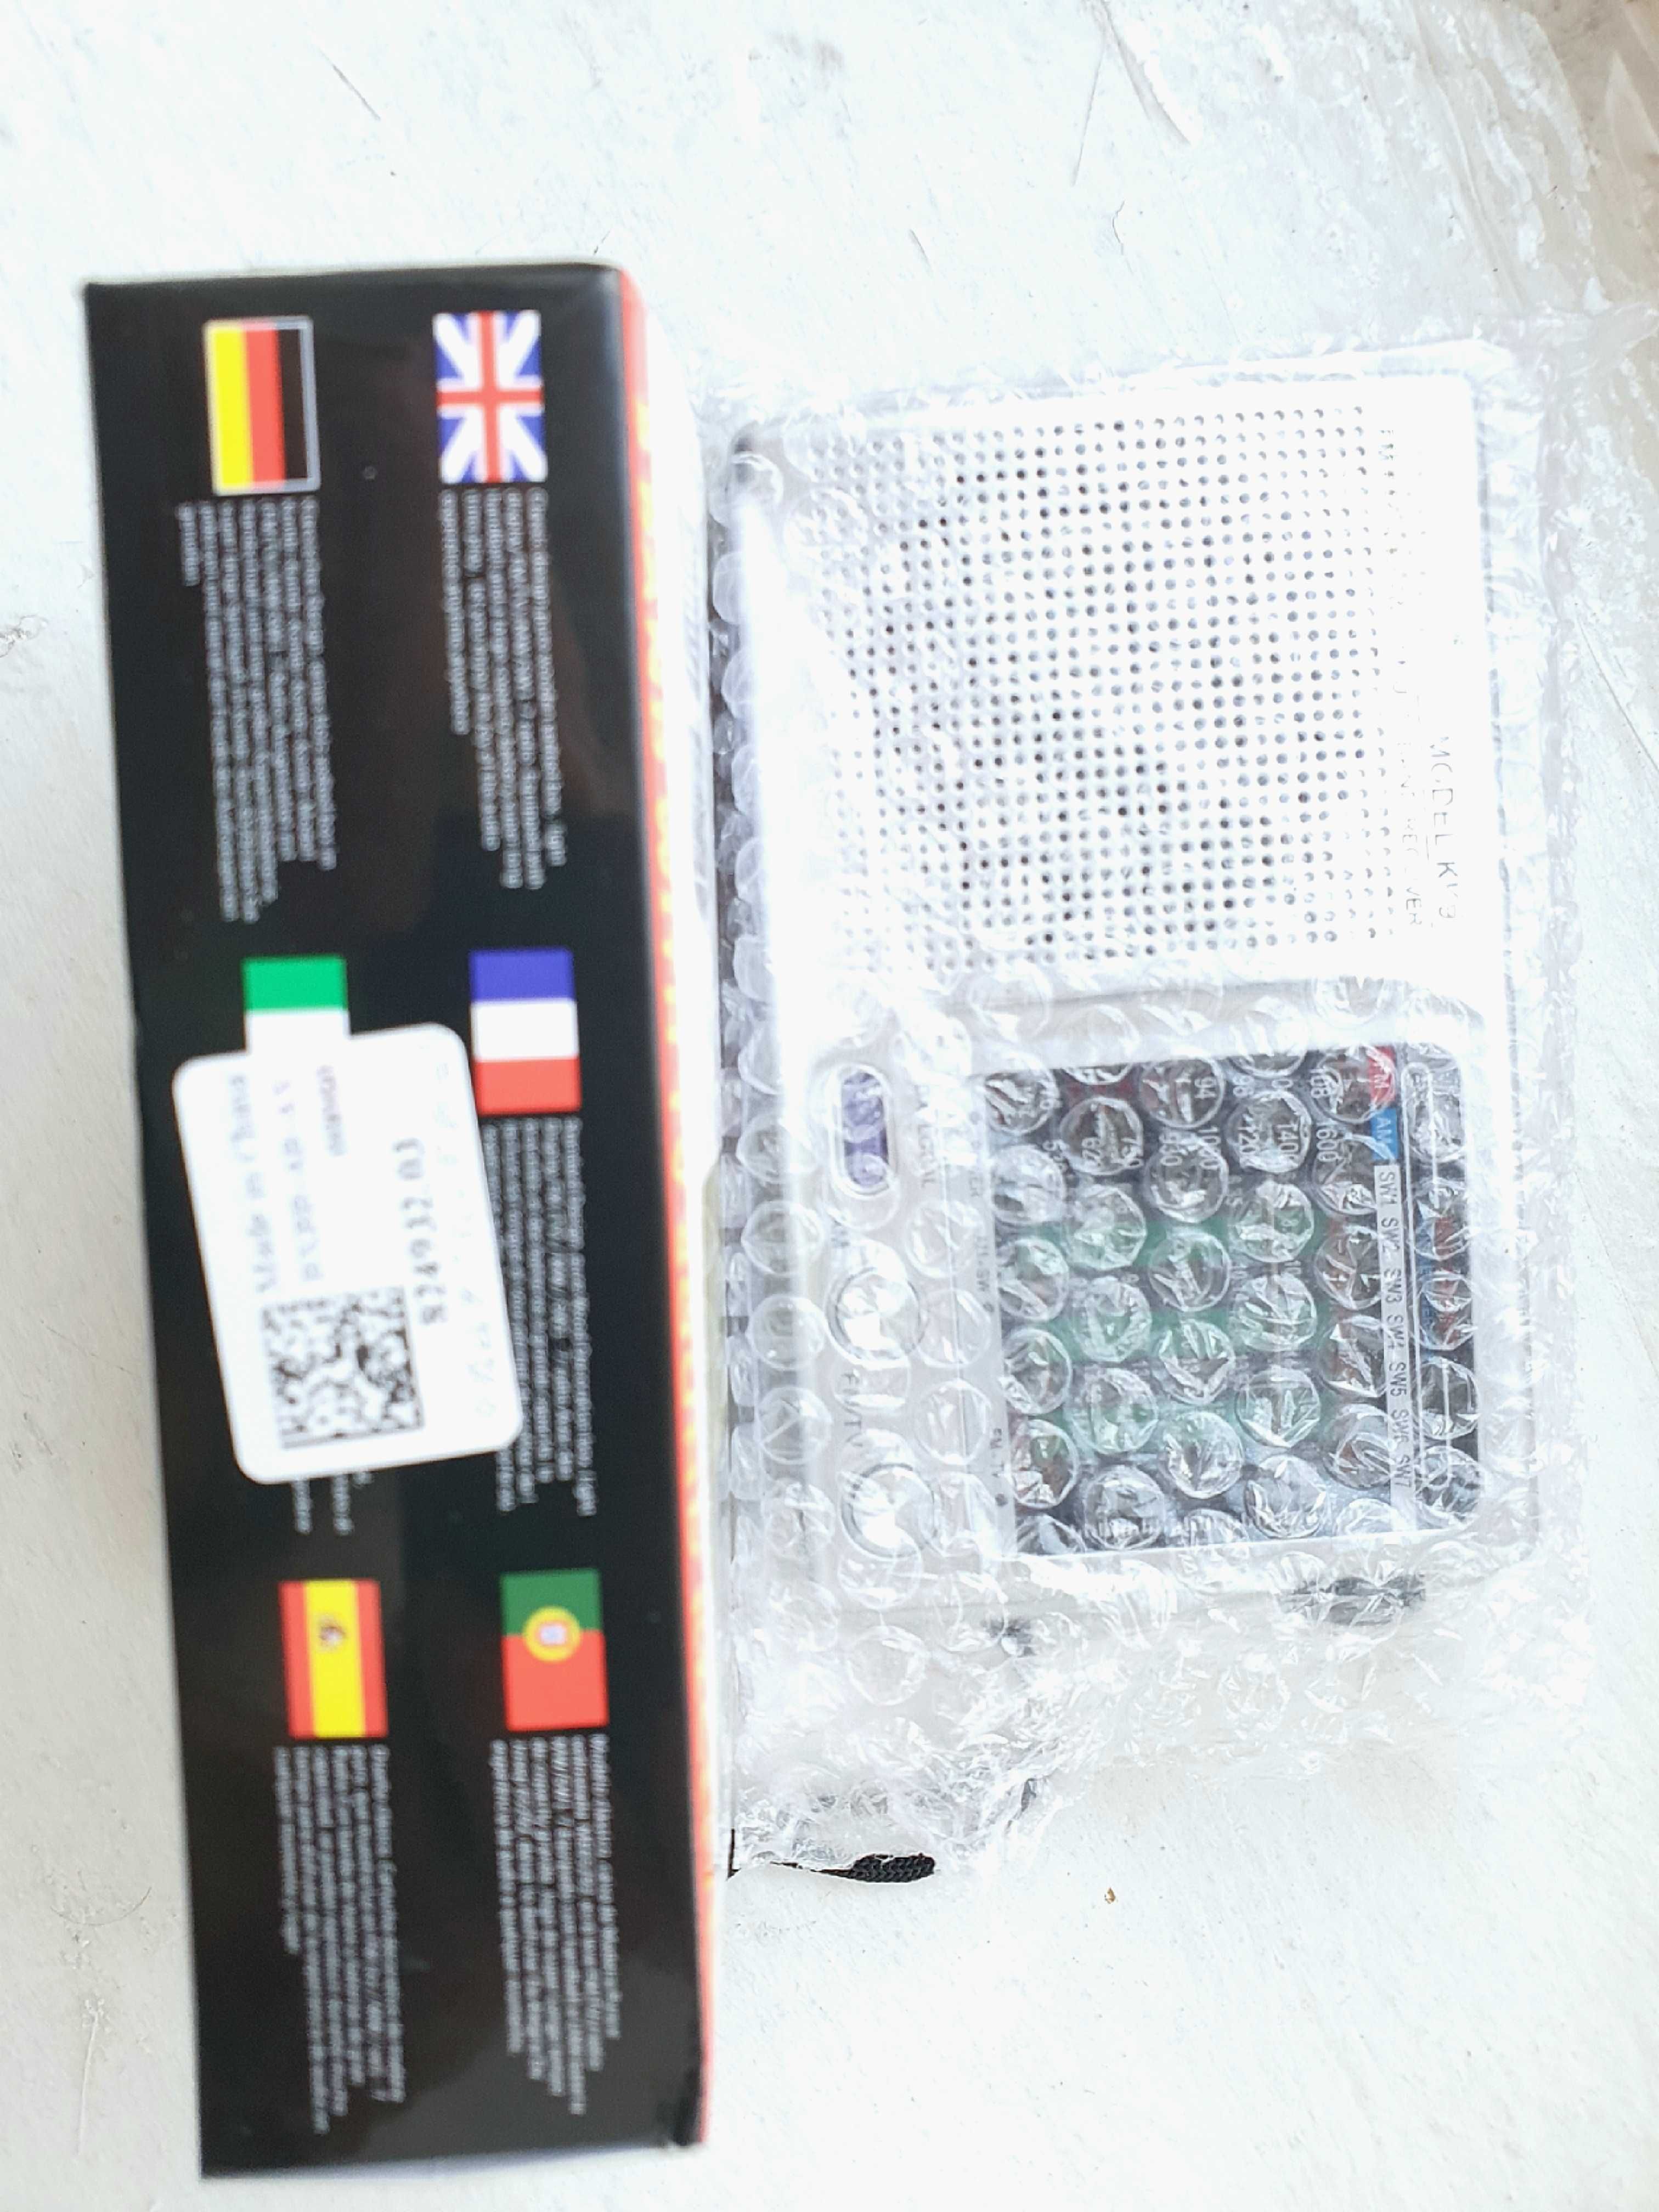 Продам радиоприёмник новый в упаковке Китай по лицензии